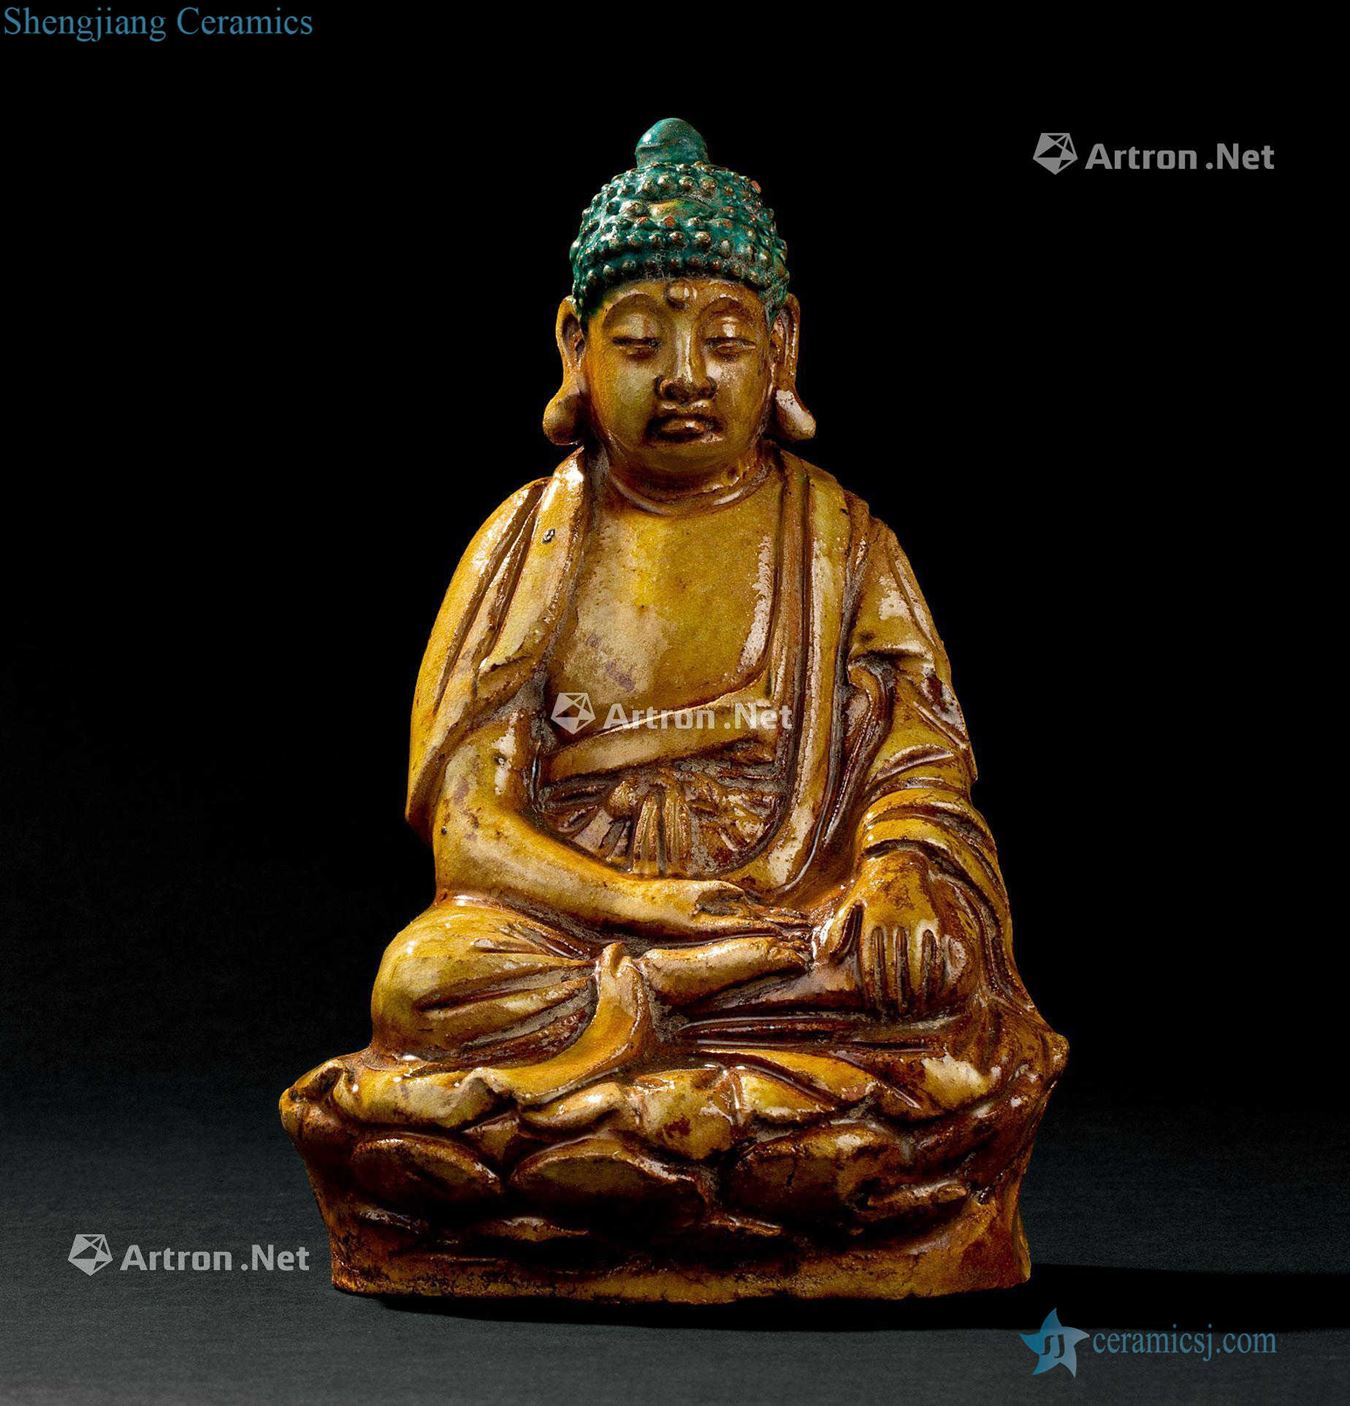 Liao dynasty (916-1125), three-color like Buddha